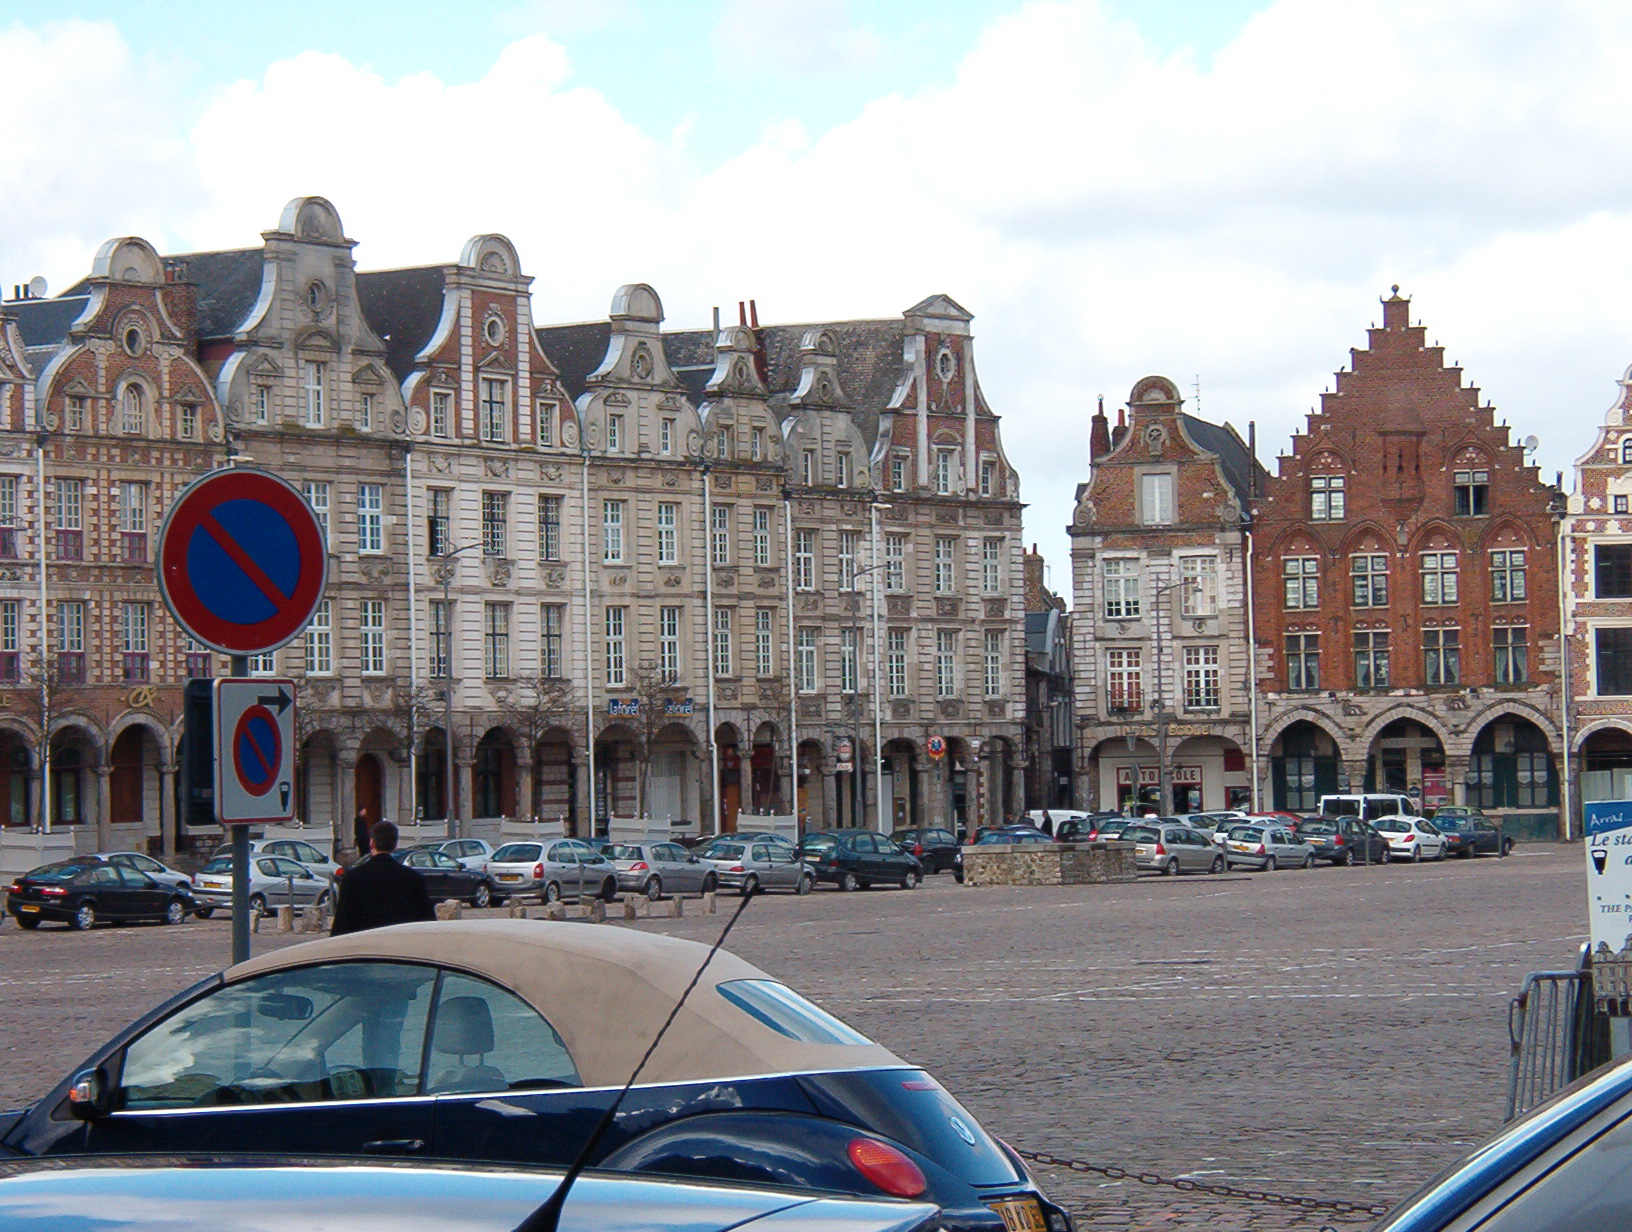 Arras Town Square